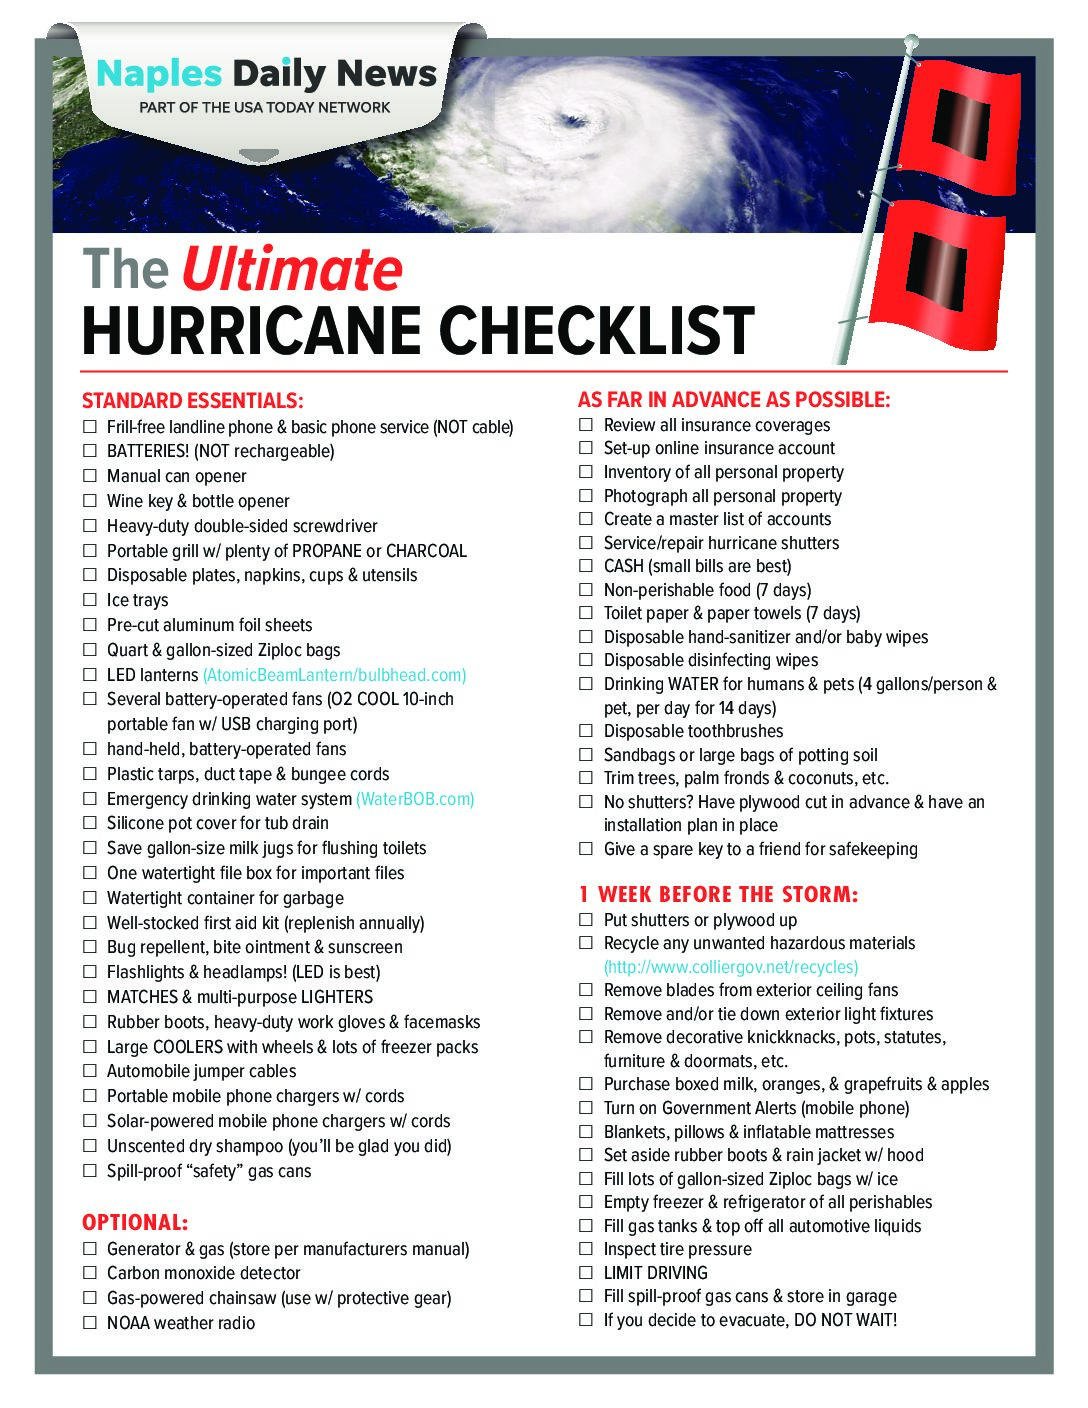 Hurricane Checklist